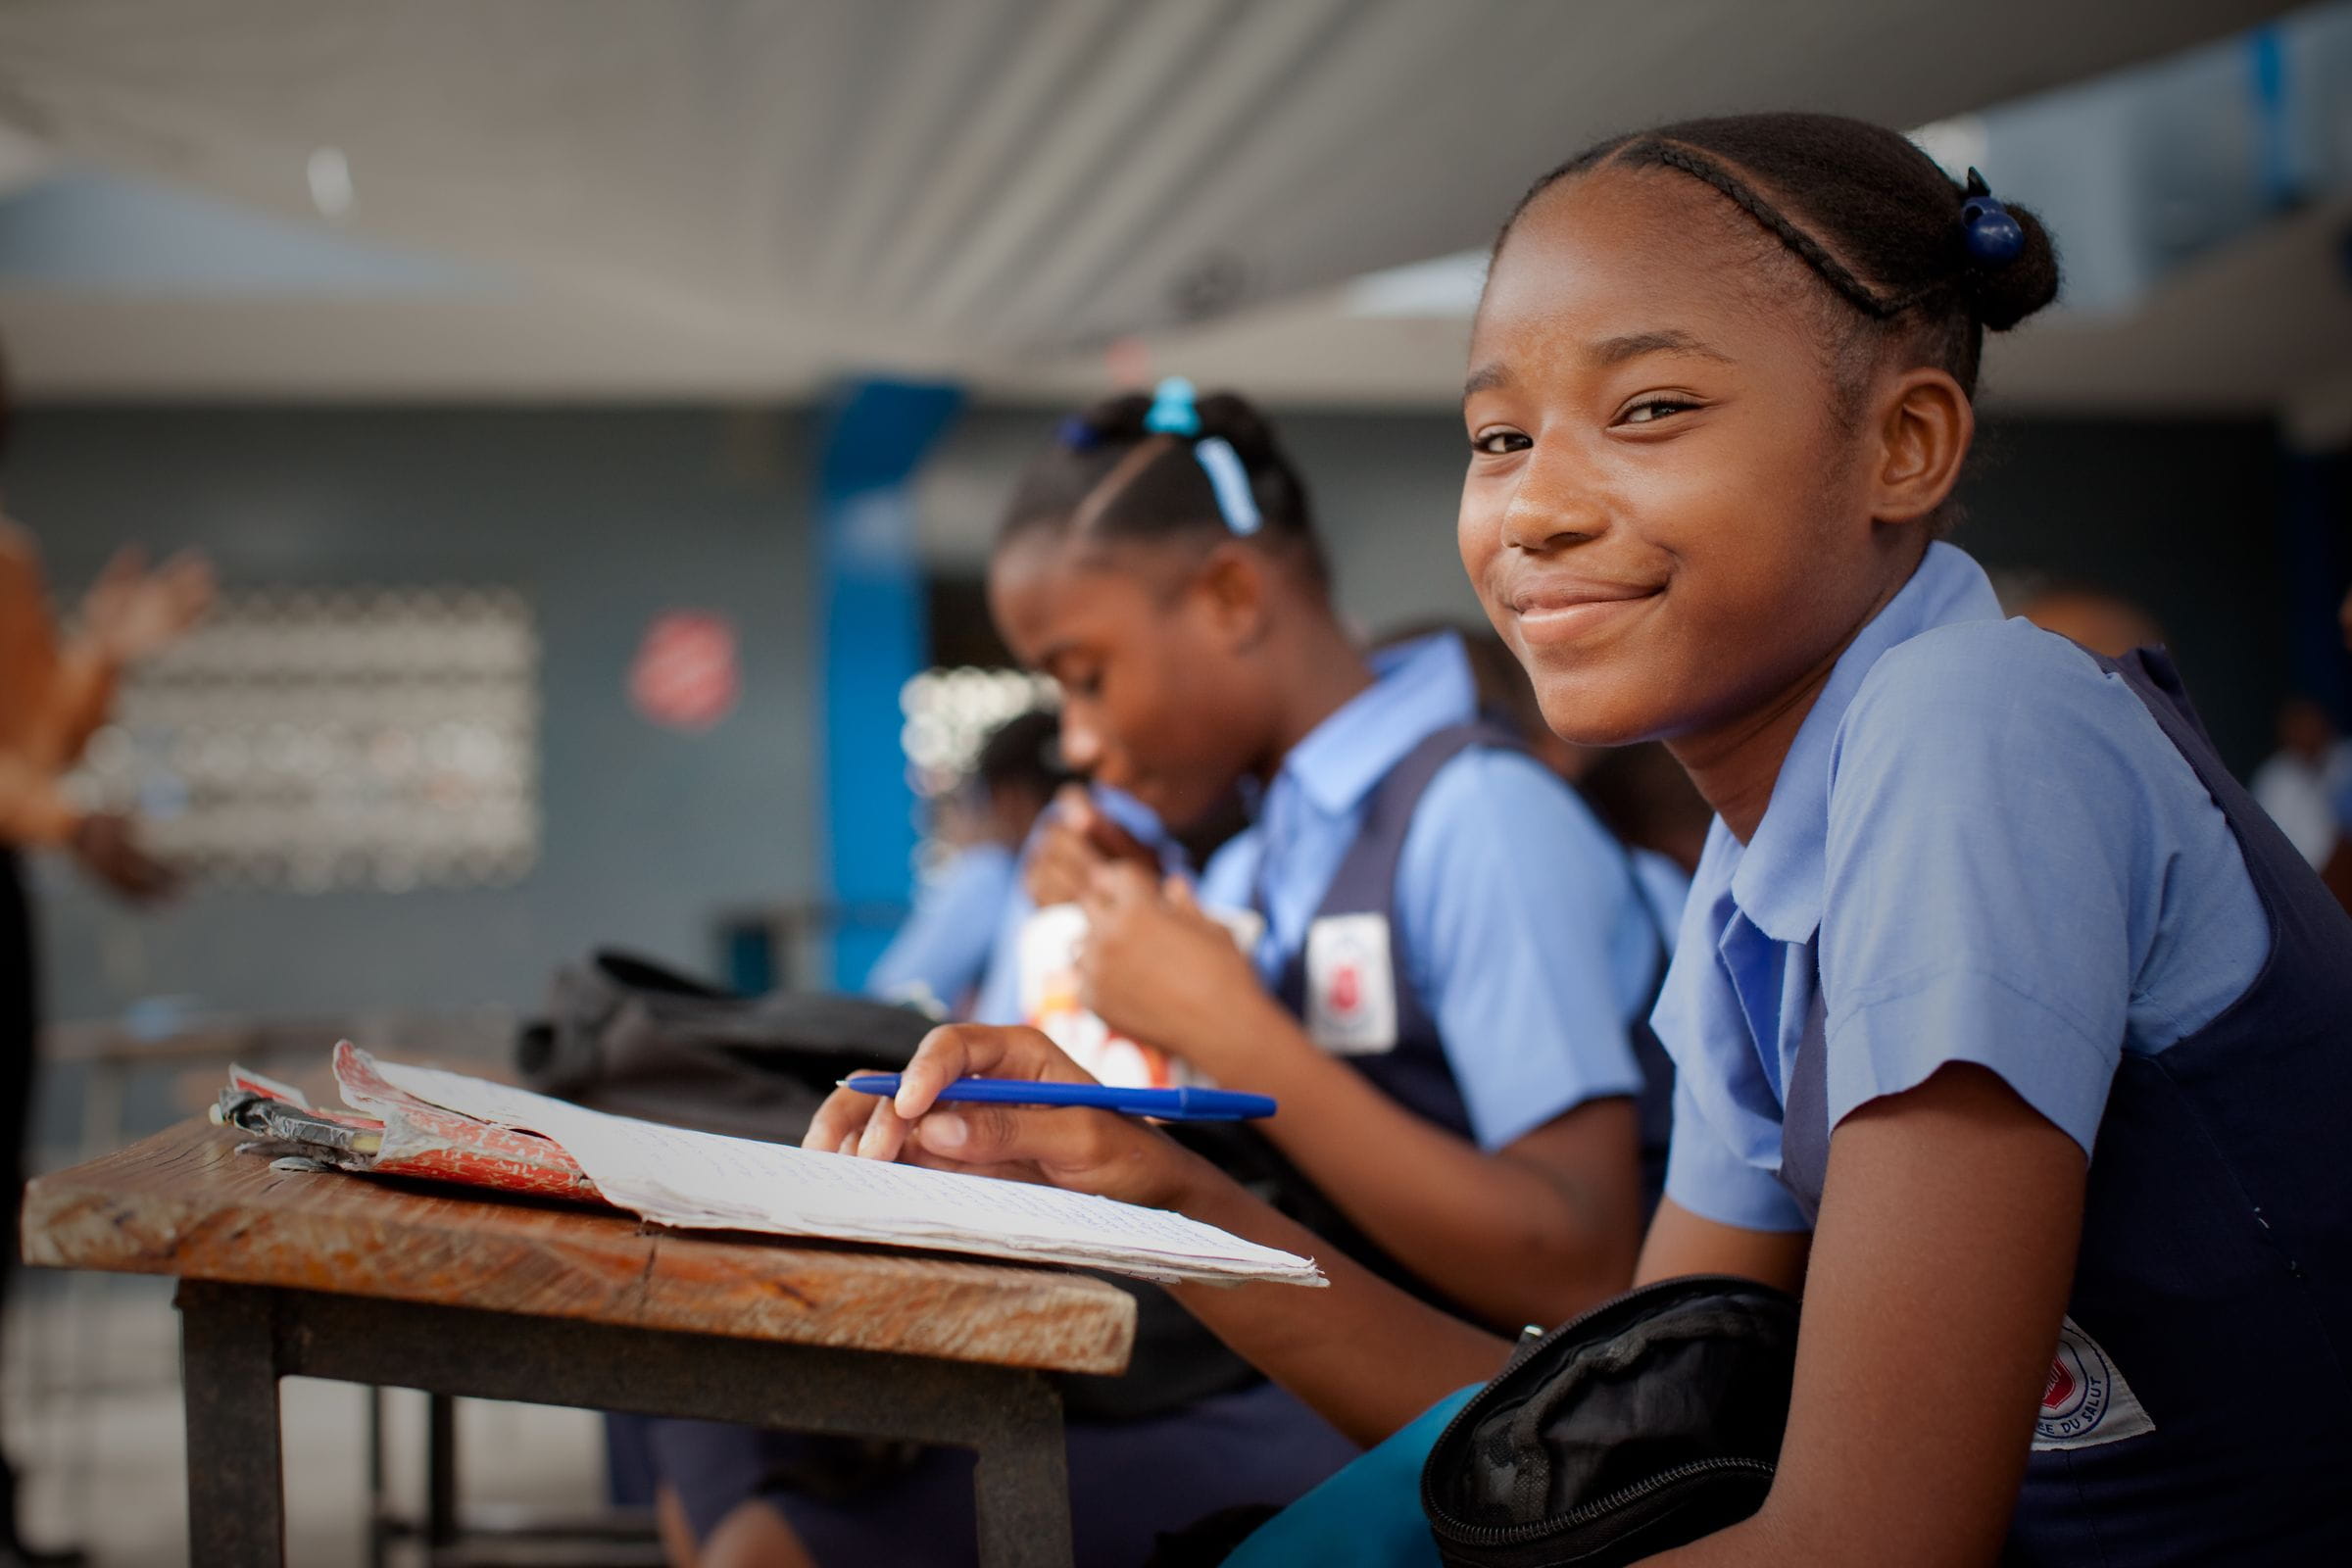 Ein Mädchen aus Haiti sitzt in eine blaue Schuluniform gekleidet in einem Klassenzimmer und lächelt. (Quelle: Jakob Studnar)